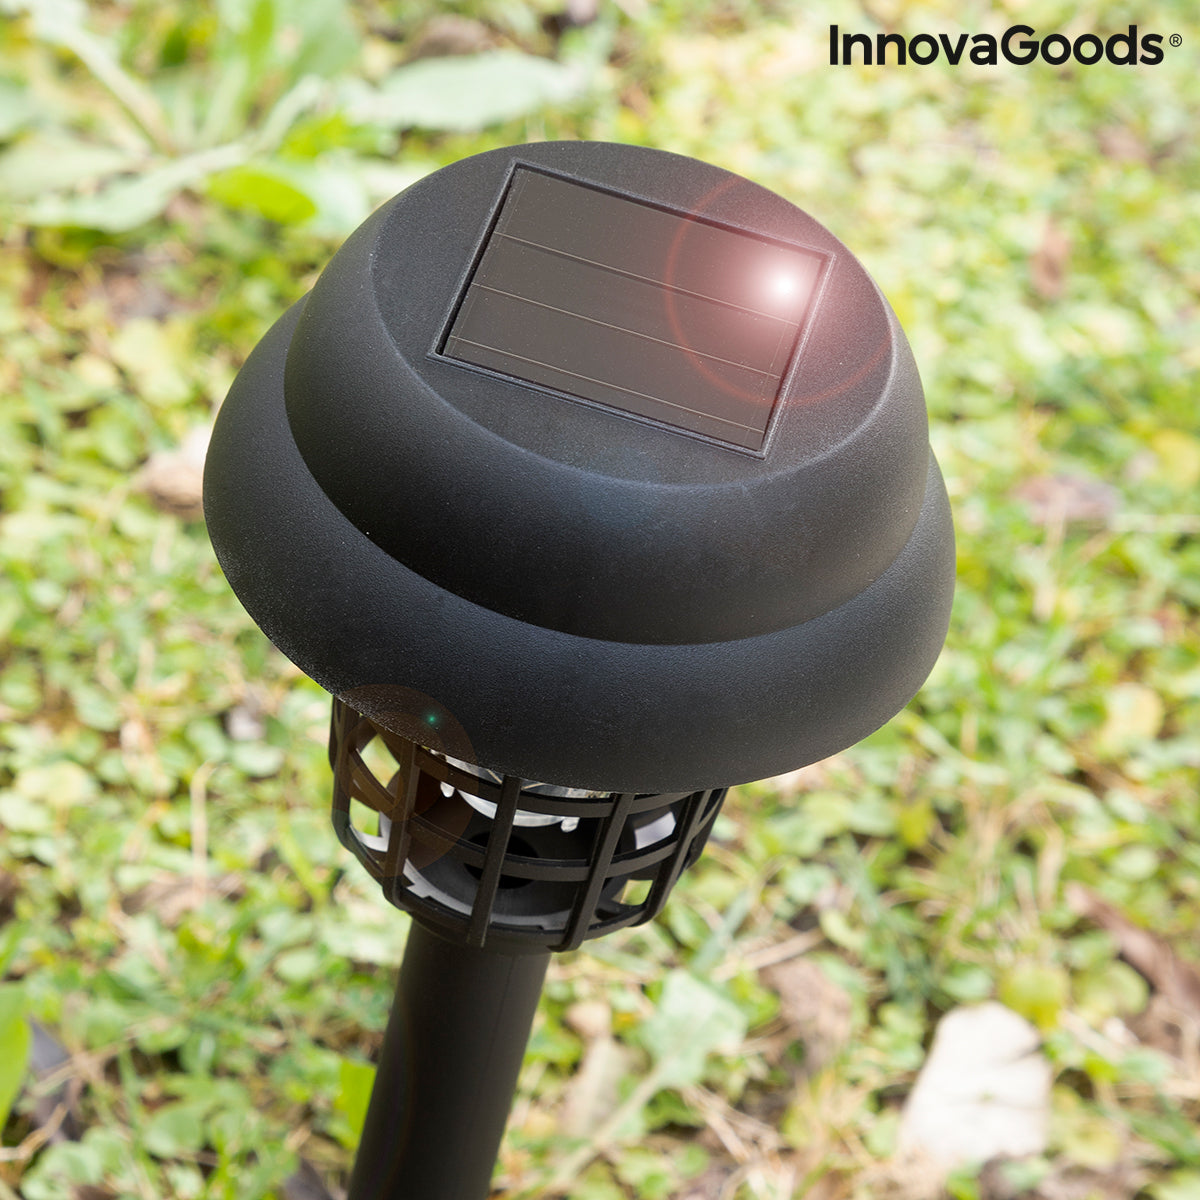 Muggendodende tuinlamp die werkt op zonne-energie Garlam InnovaGoods